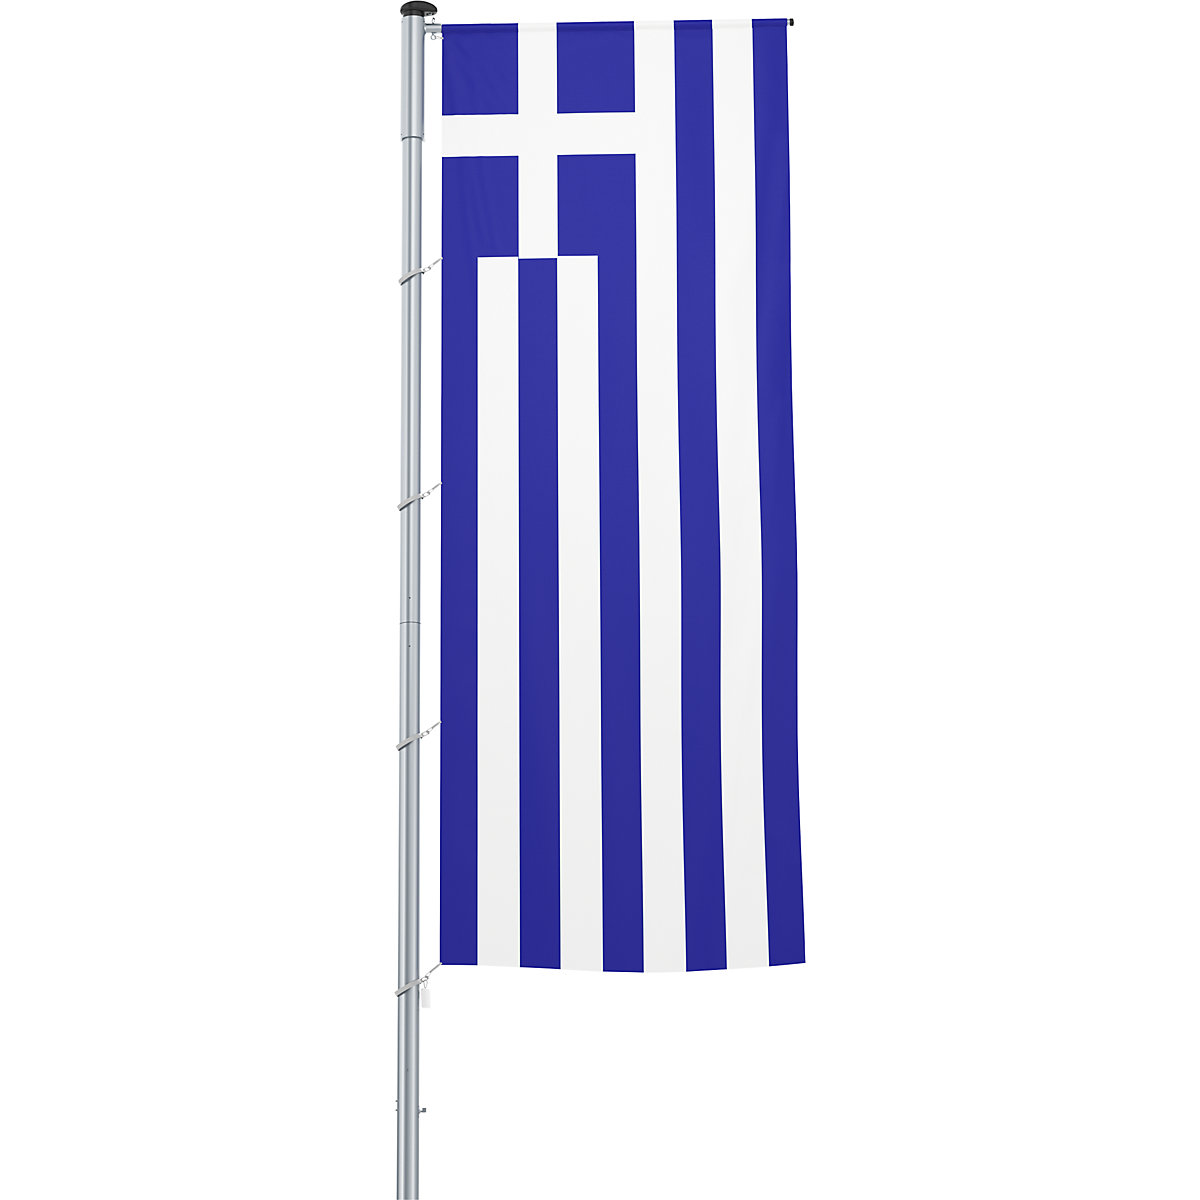 Mannus – Bandera con pluma/bandera del país, formato 1,2 x 3 m, Grecia